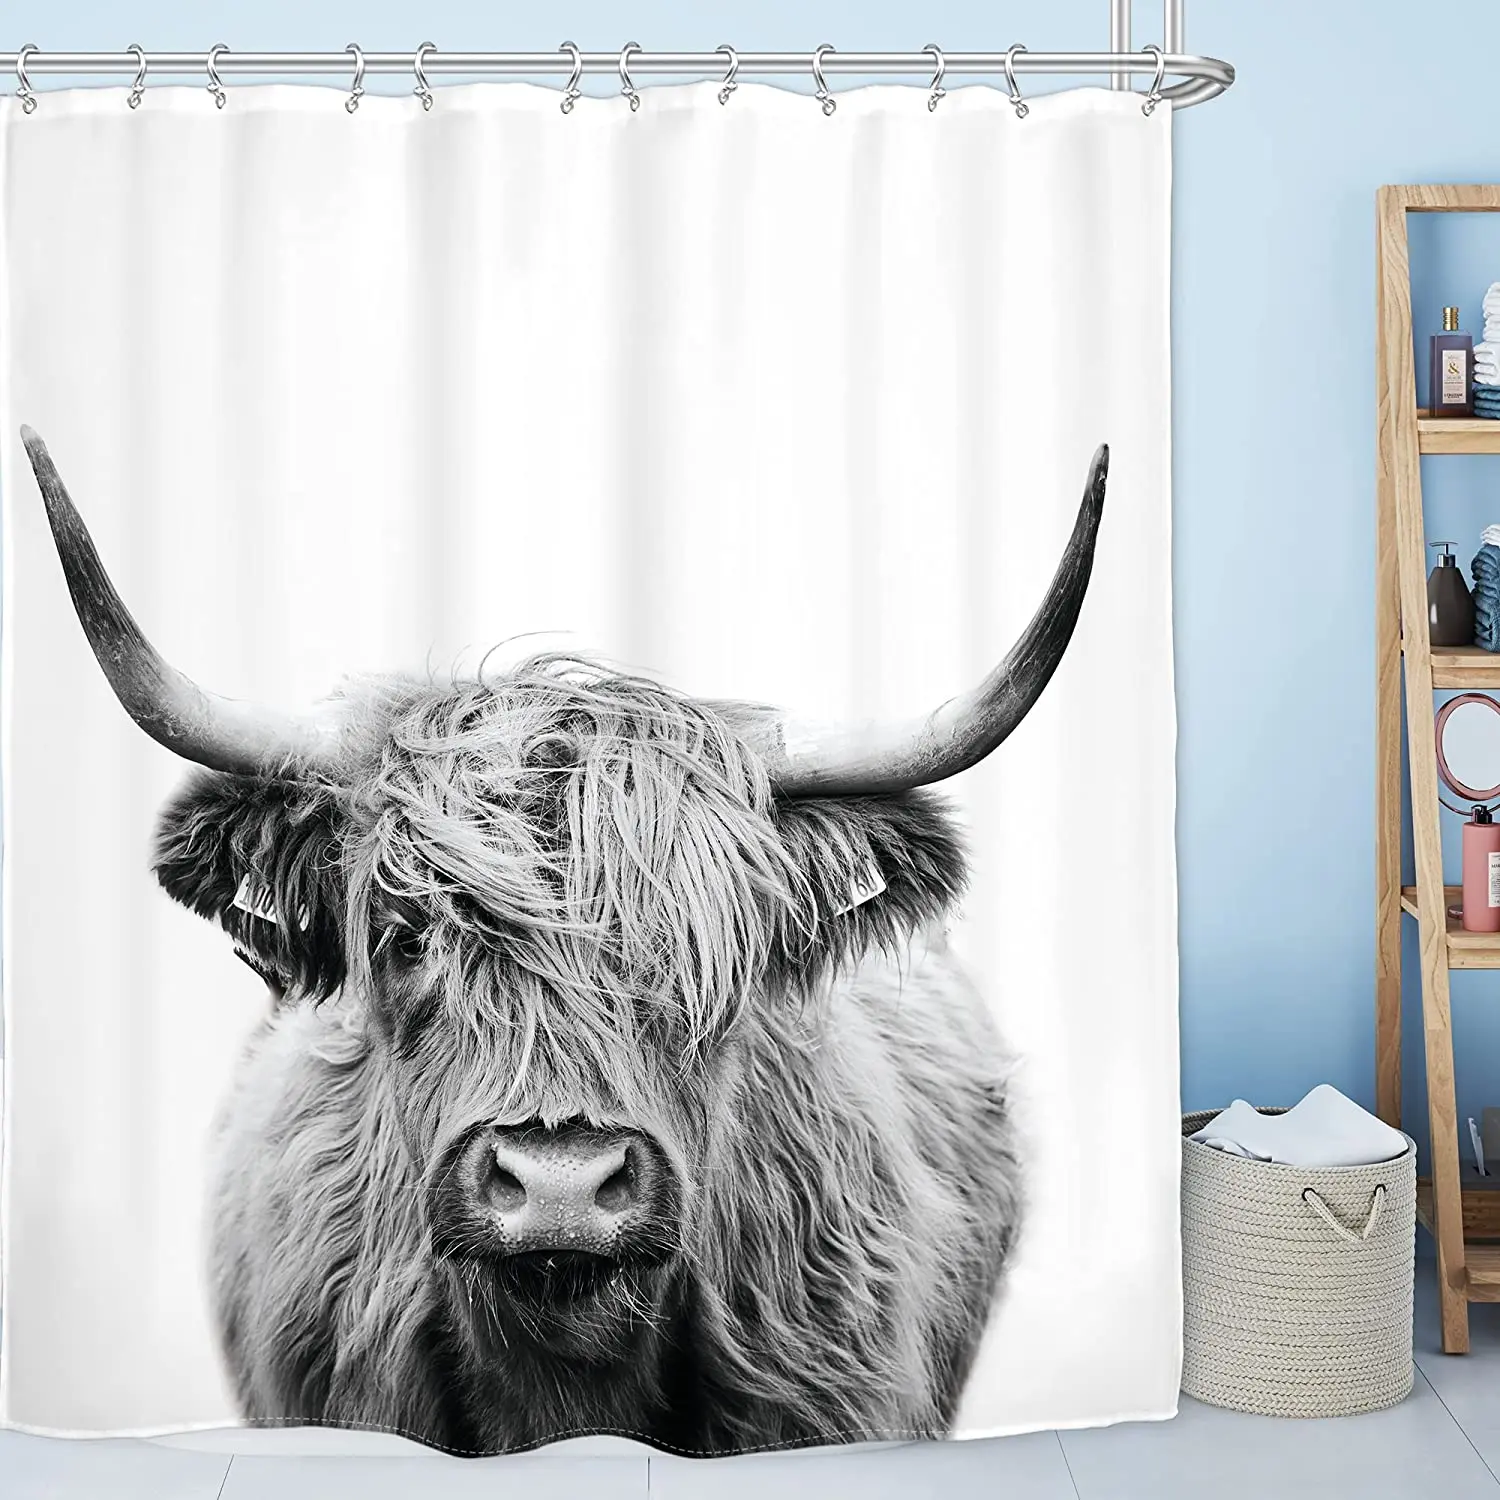 

Highland корова бык занавеска для душа фермерское животное забавные аксессуары для ванной ферма деревенский декор для ванной комнаты Набор с крючками коричневый